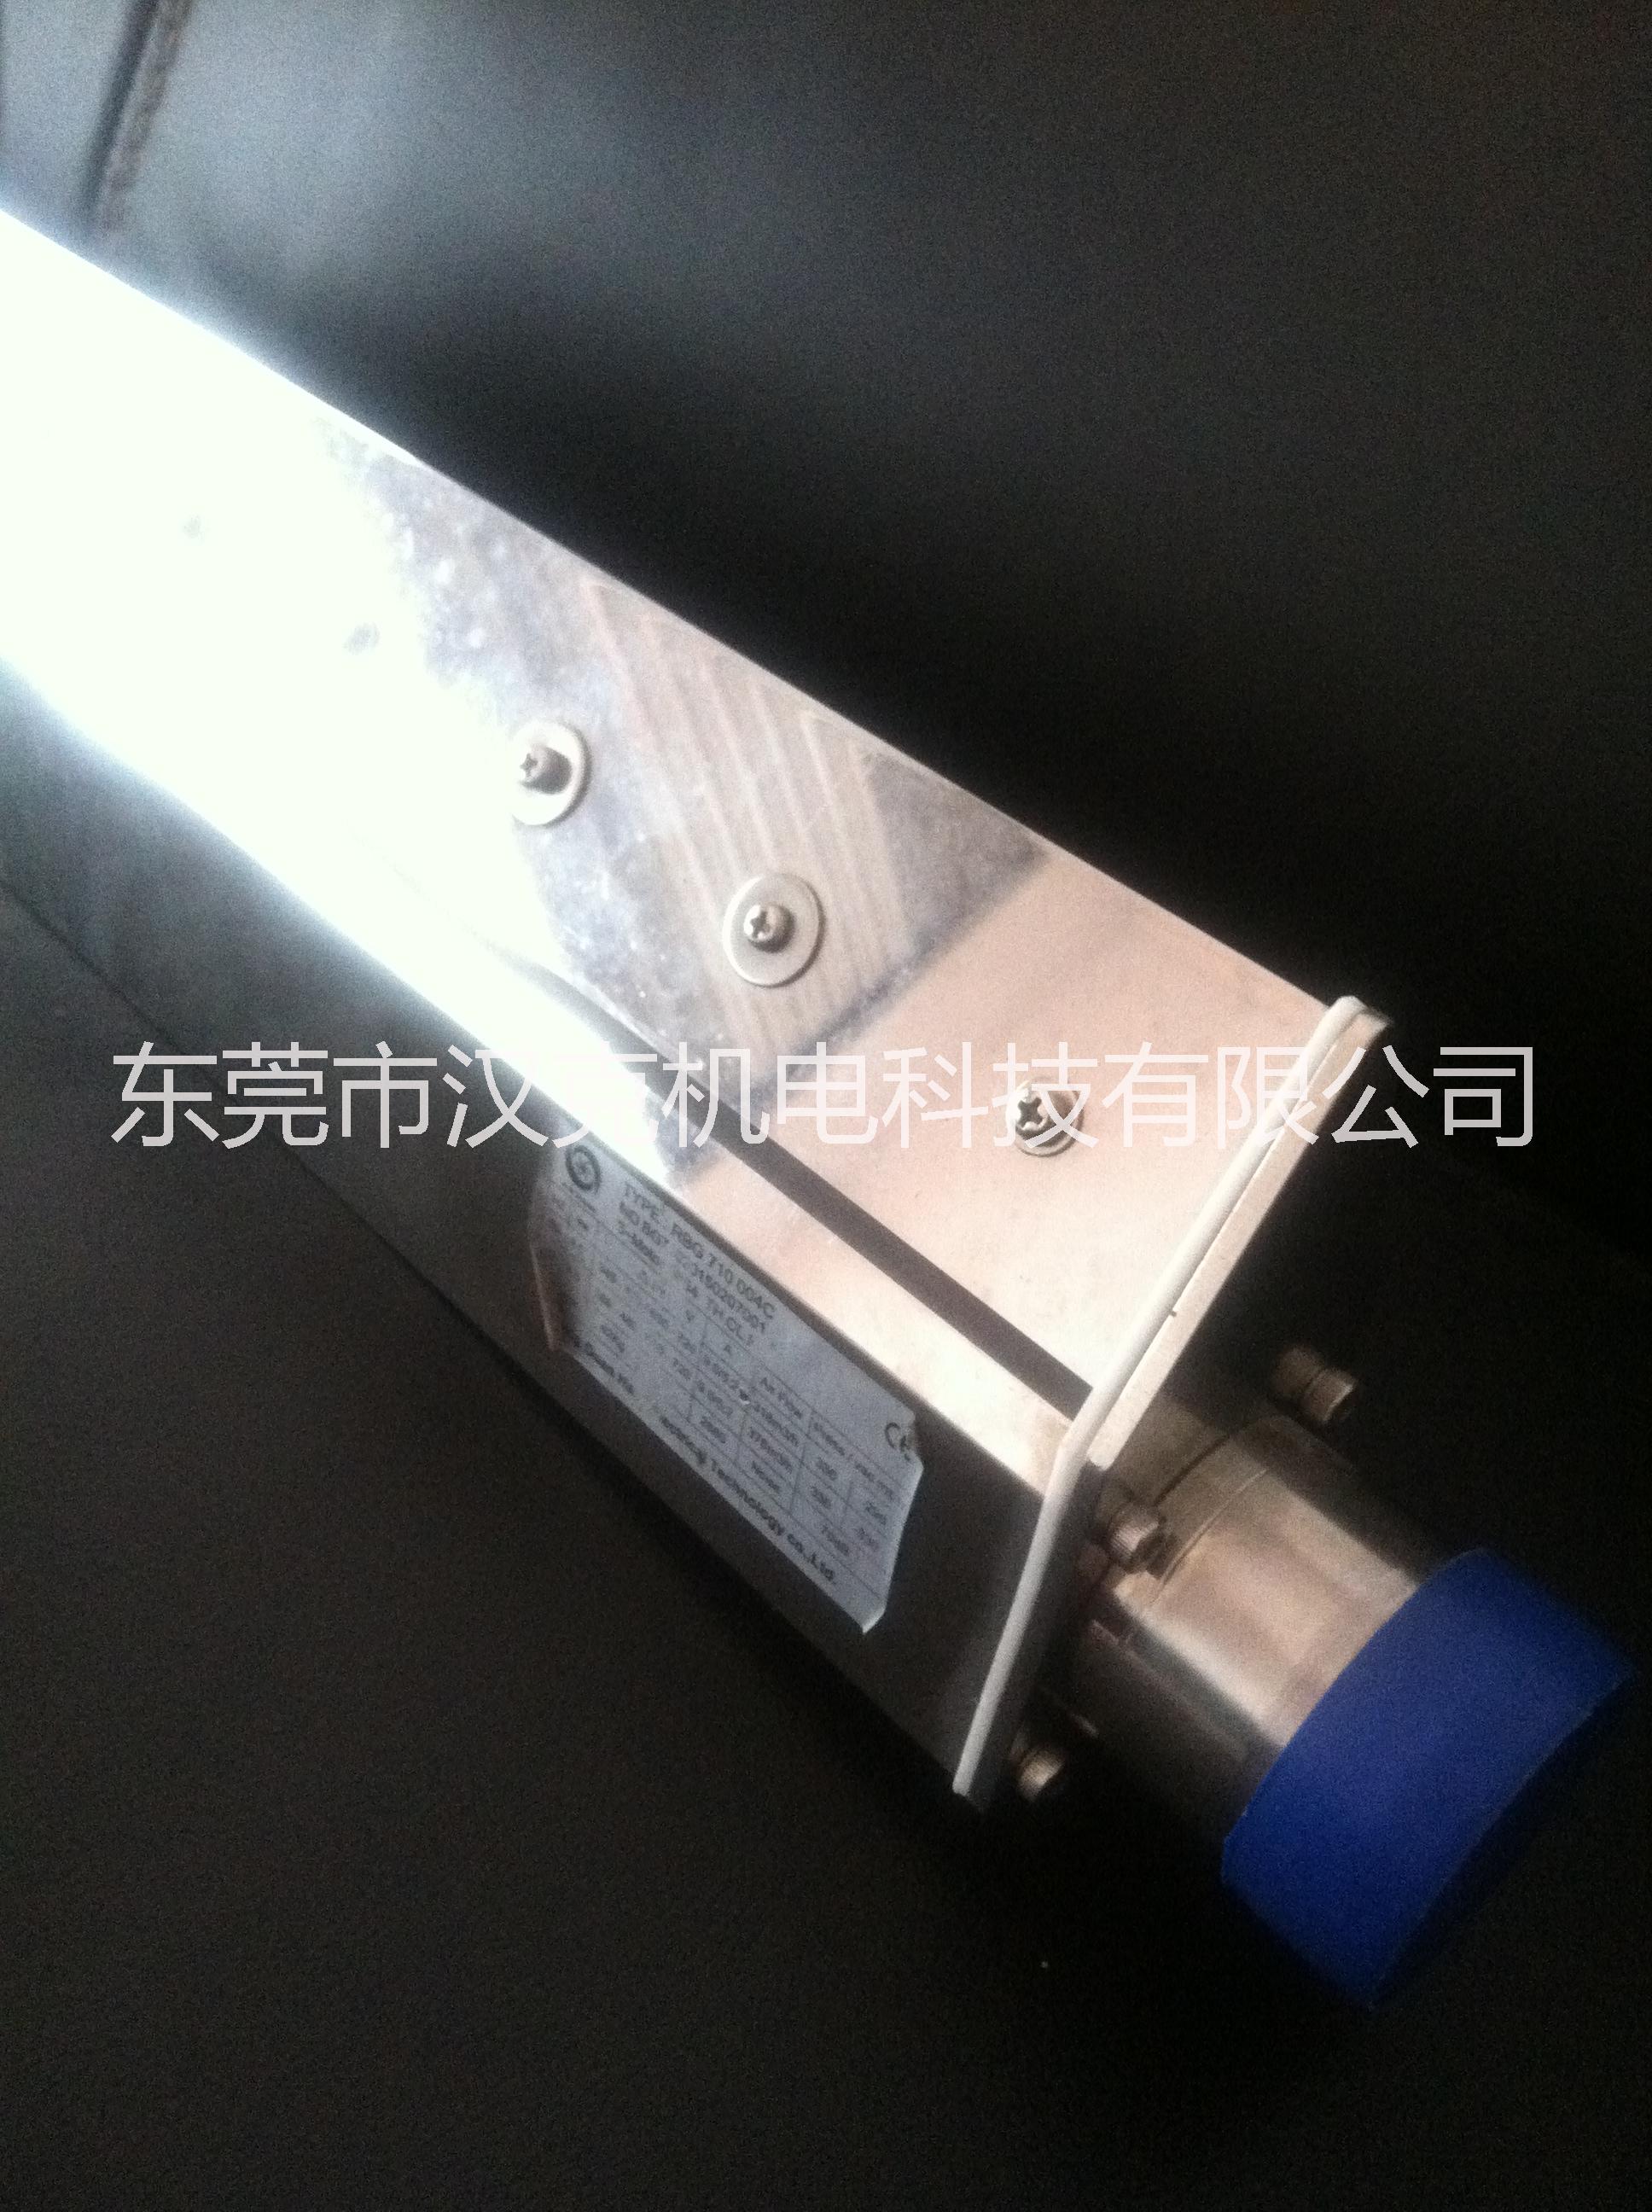 供应用于干燥的高质量防腐风刀 厂家直销高质量防腐风刀